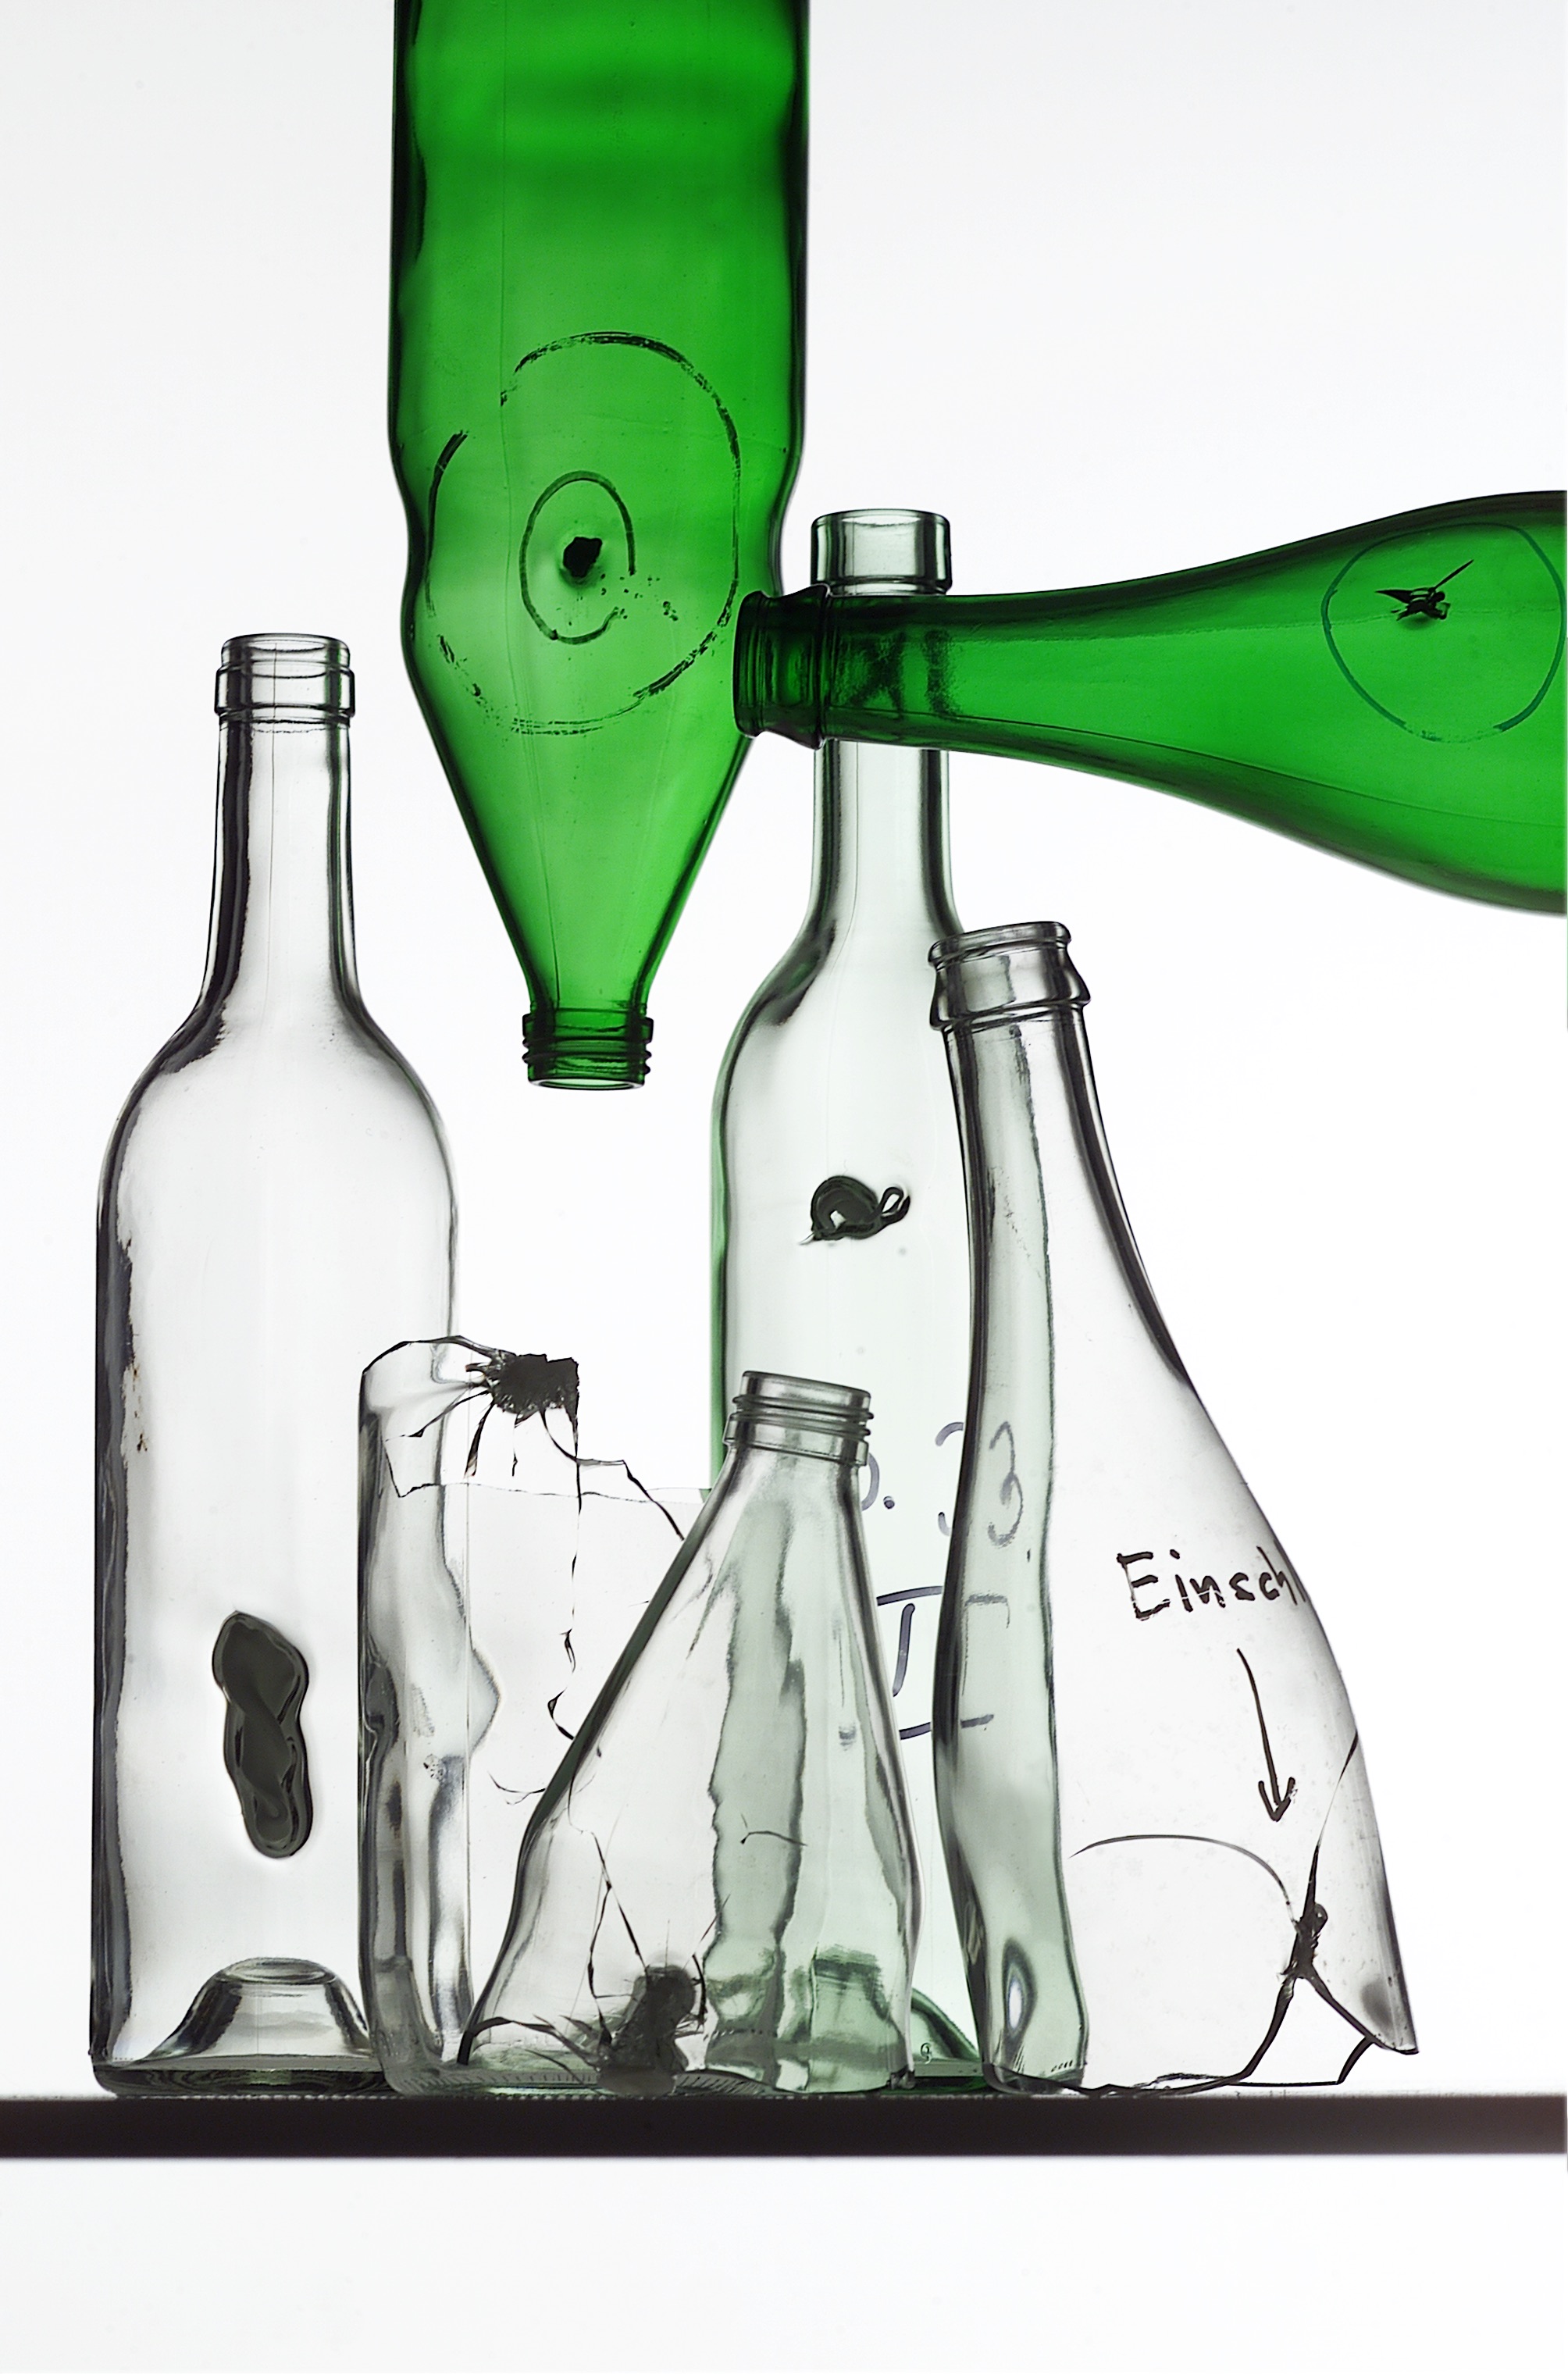 Mehrere durchsichtige Flaschen und zwei grüne, die alle fehlerhaft sind, da sie sogenannte Einschlüsse aus anderen Materialien enthalten.